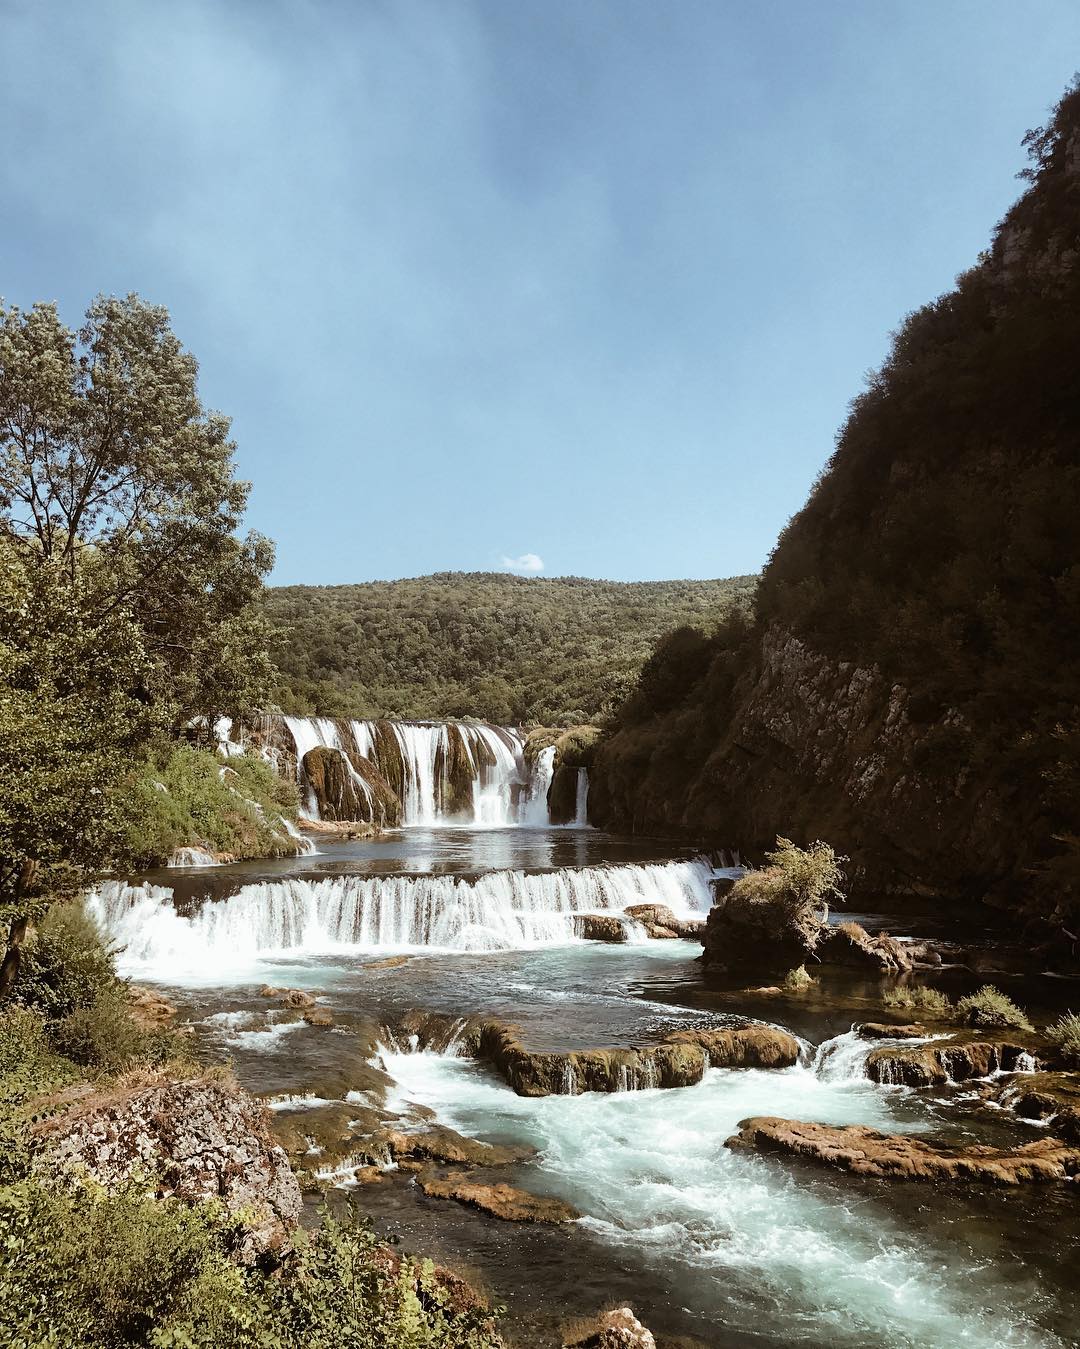 4 lokacije koje vrijedi posjetiti u BiH prema preporuci TripAdvisora